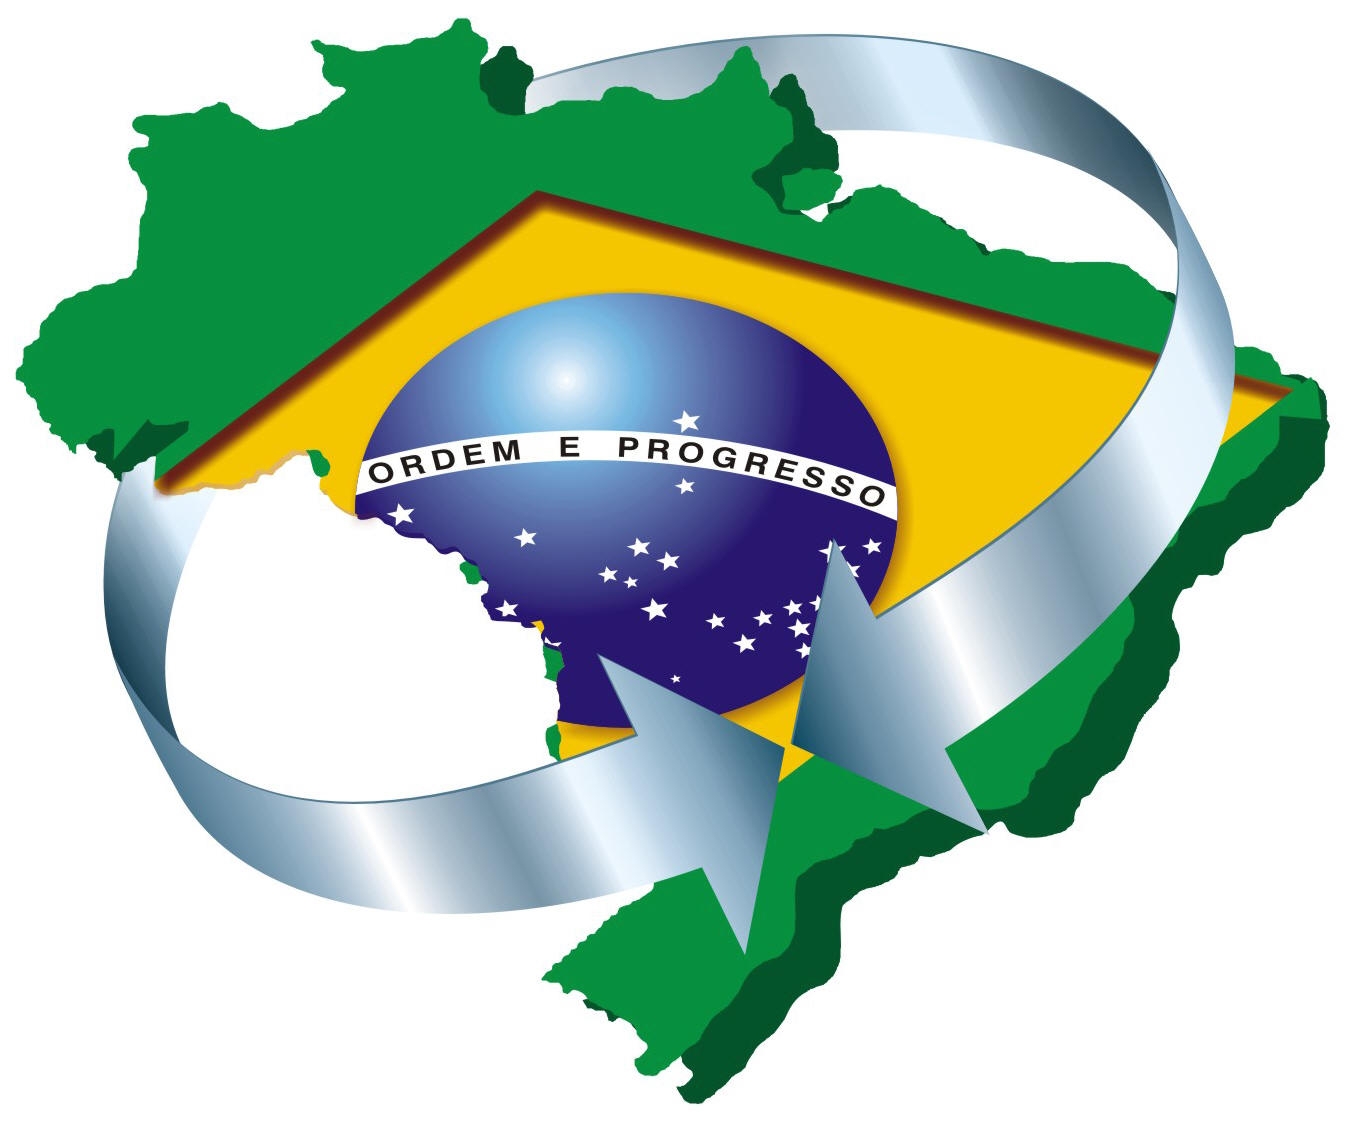 A logística a serviço do Brasil